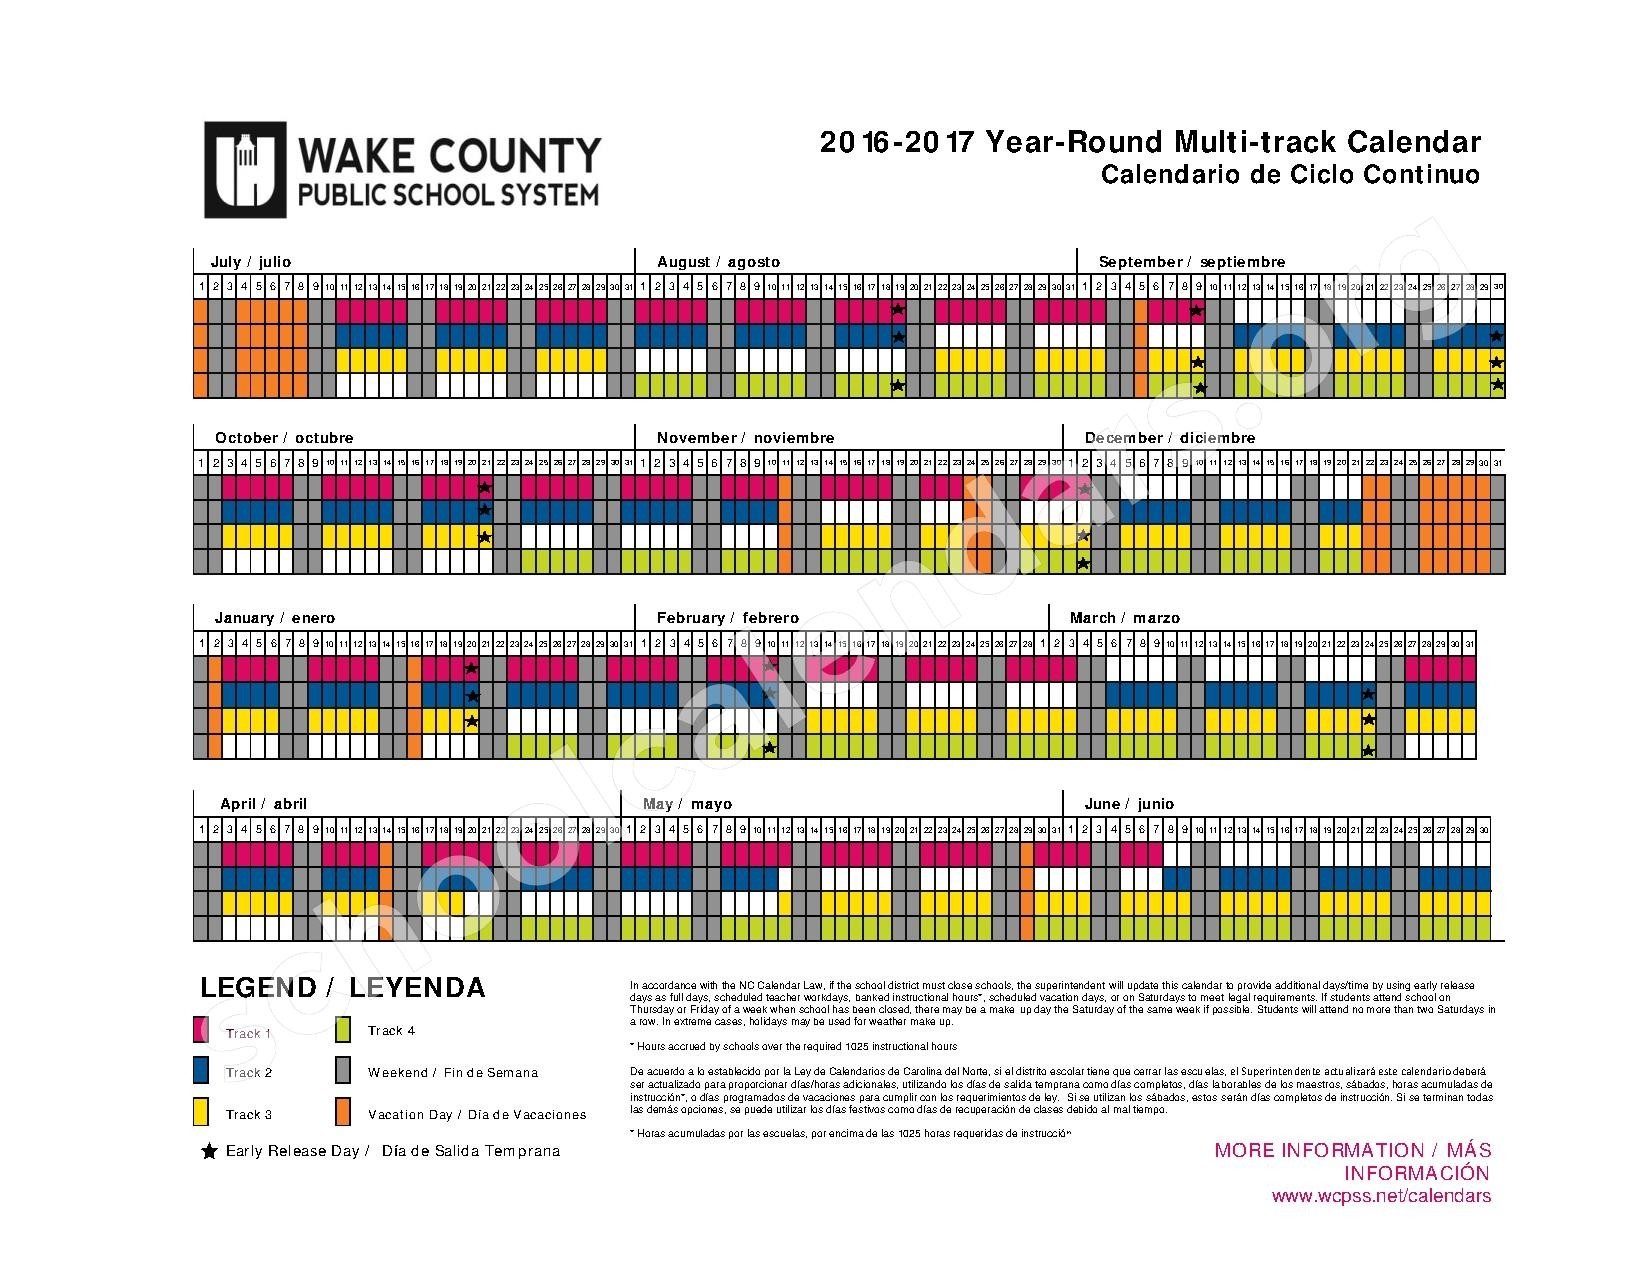 Wake County School Calendar 2018 Aigb